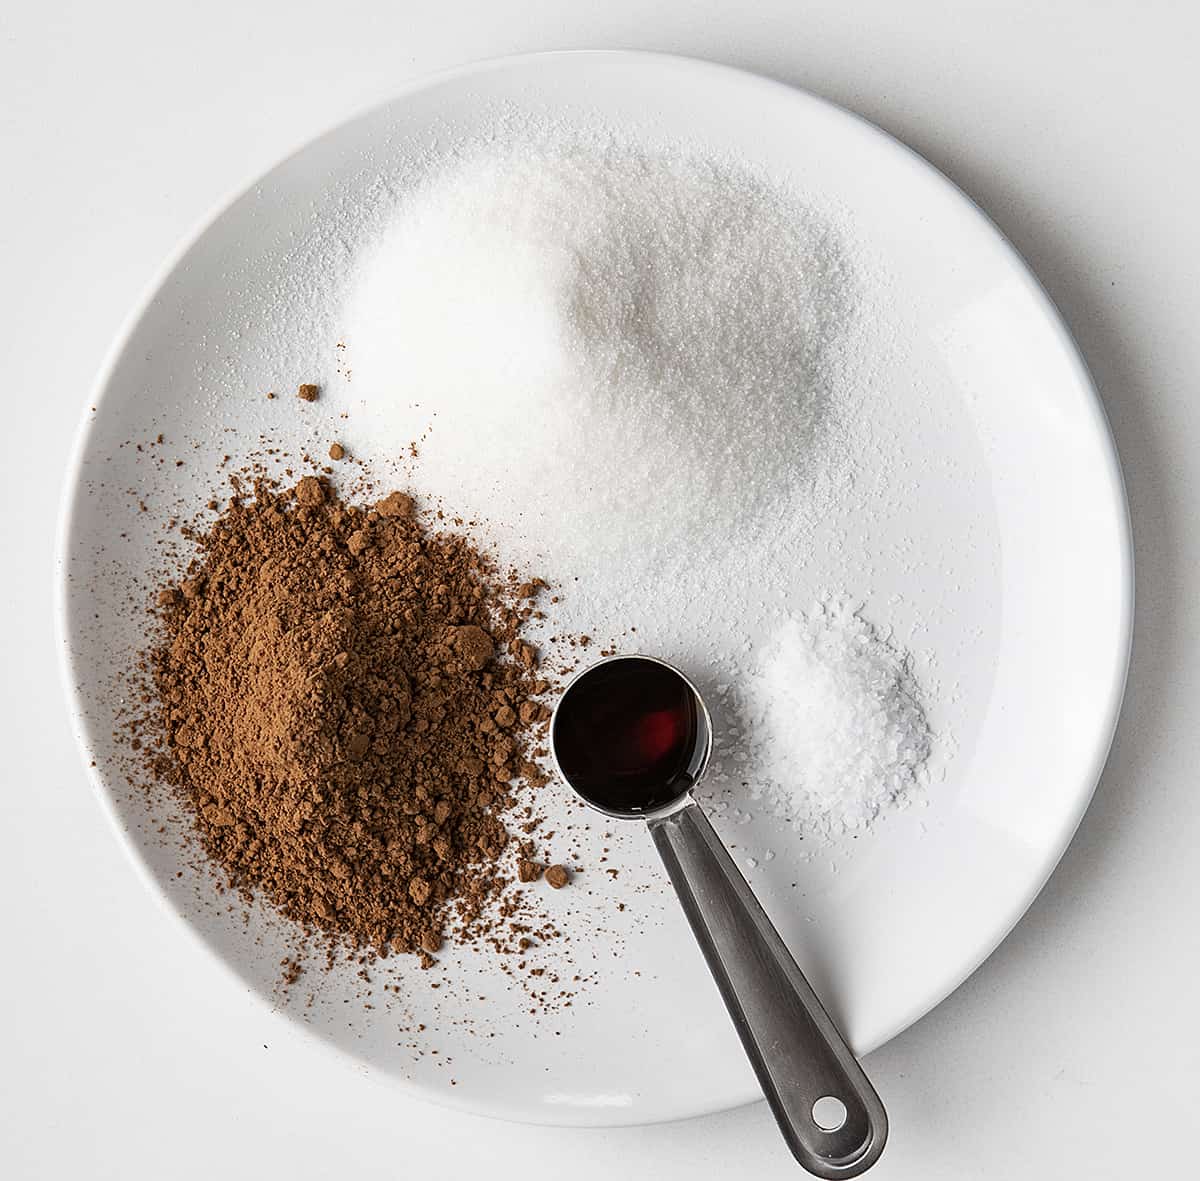 自制巧克力软糖酱的原料放在白色盘子上